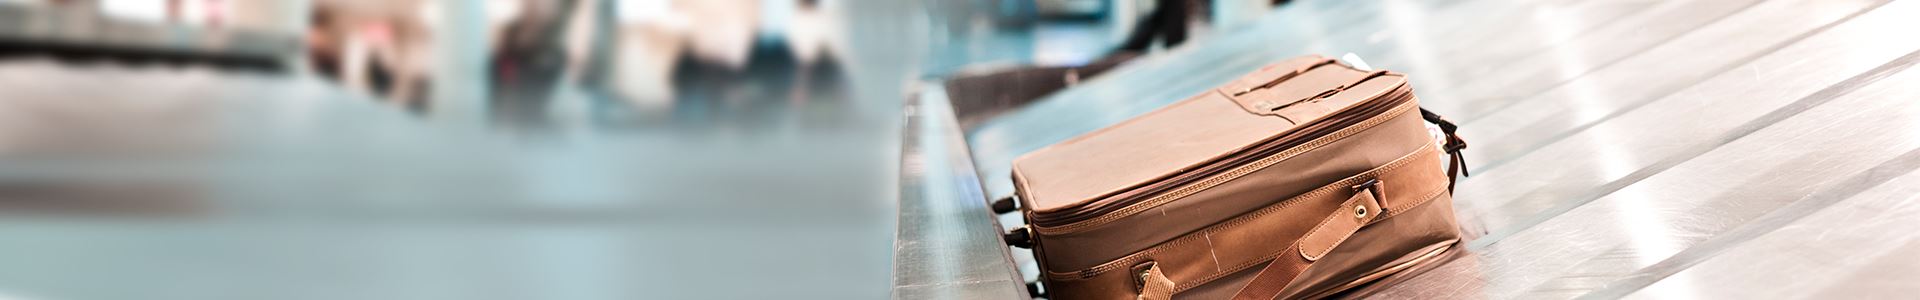 Das Bild zeigt einen braunen Koffer, der auf einem Gepäckförderband eines Flughafens liegt. Daneben stehen keine weiteren Koffer.